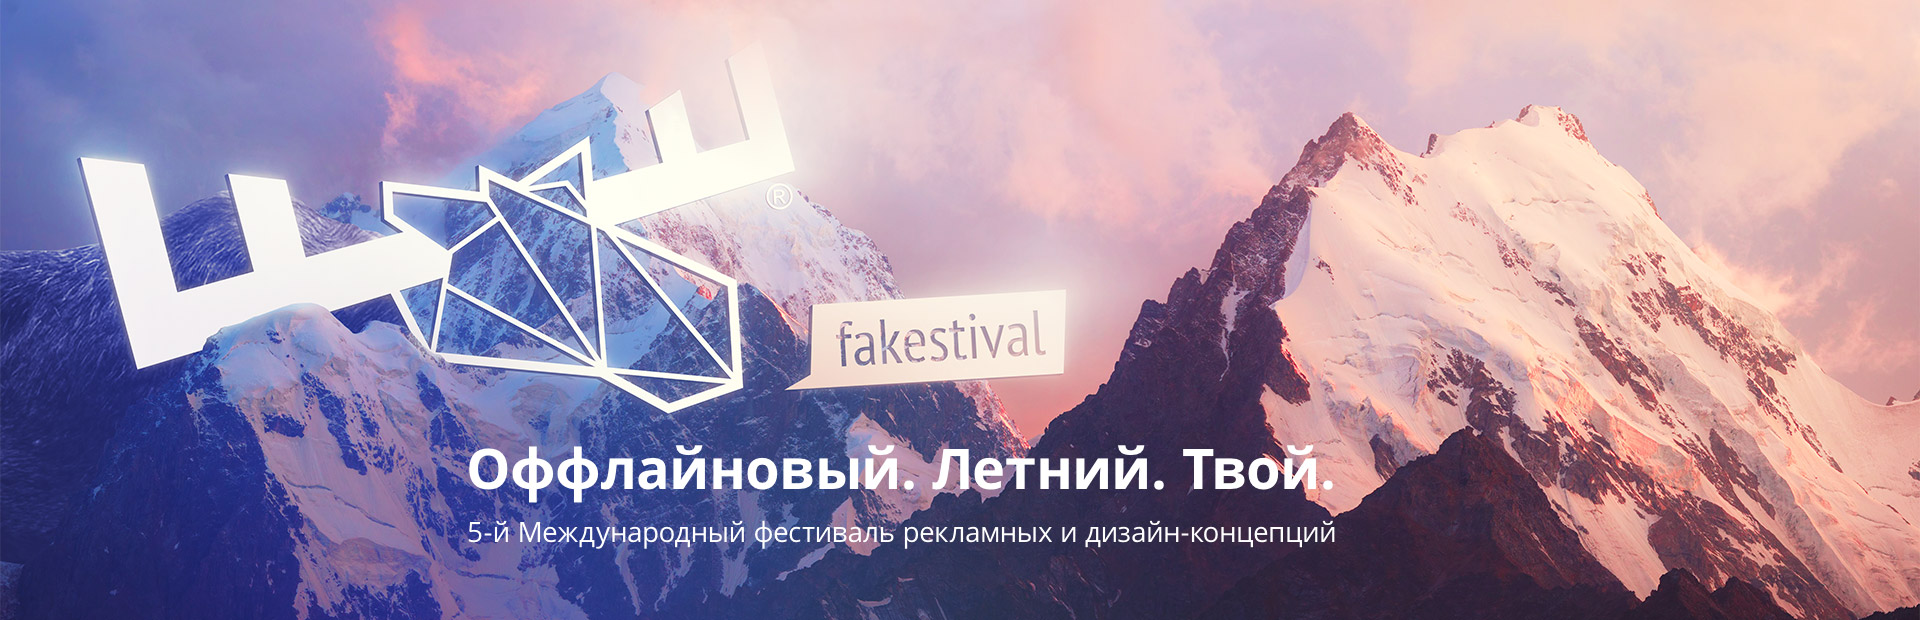 10—15 августа в Красной поляне, Сочи пройдёт 5-й международный фестиваль рекламы и дизайна «Фейкстиваль»